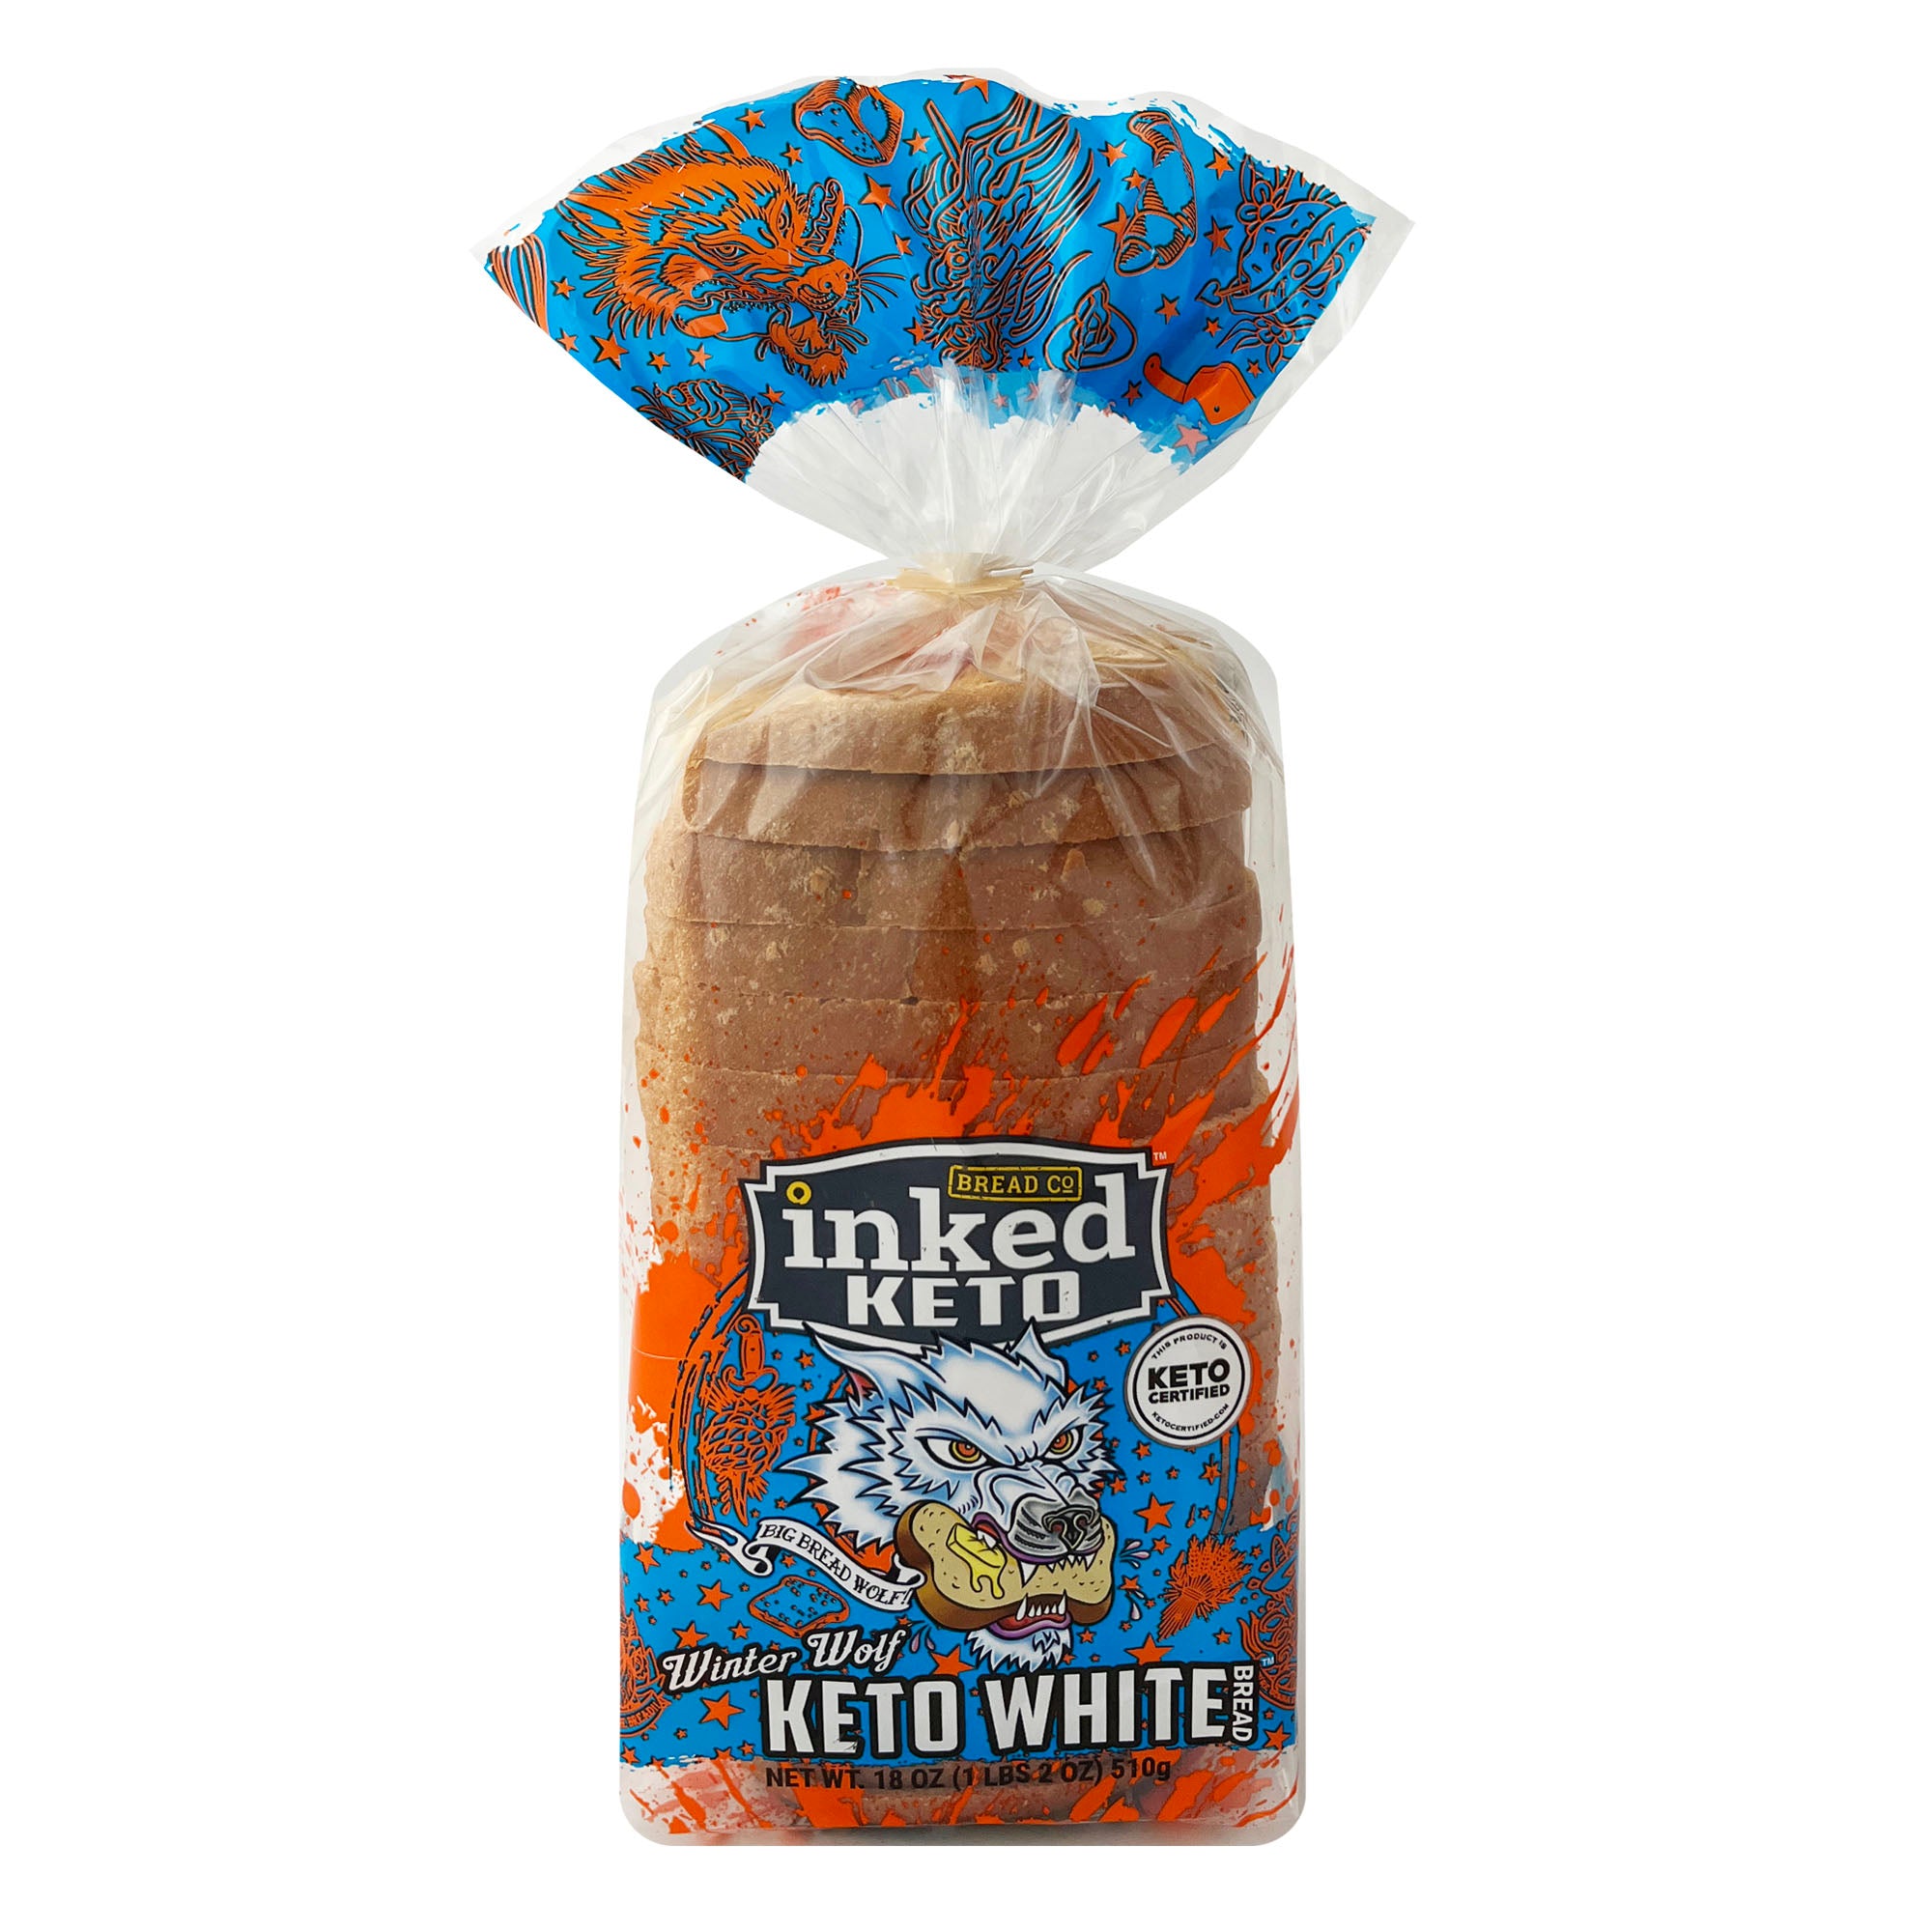 (Keto) Winter Wolf Keto White Bread